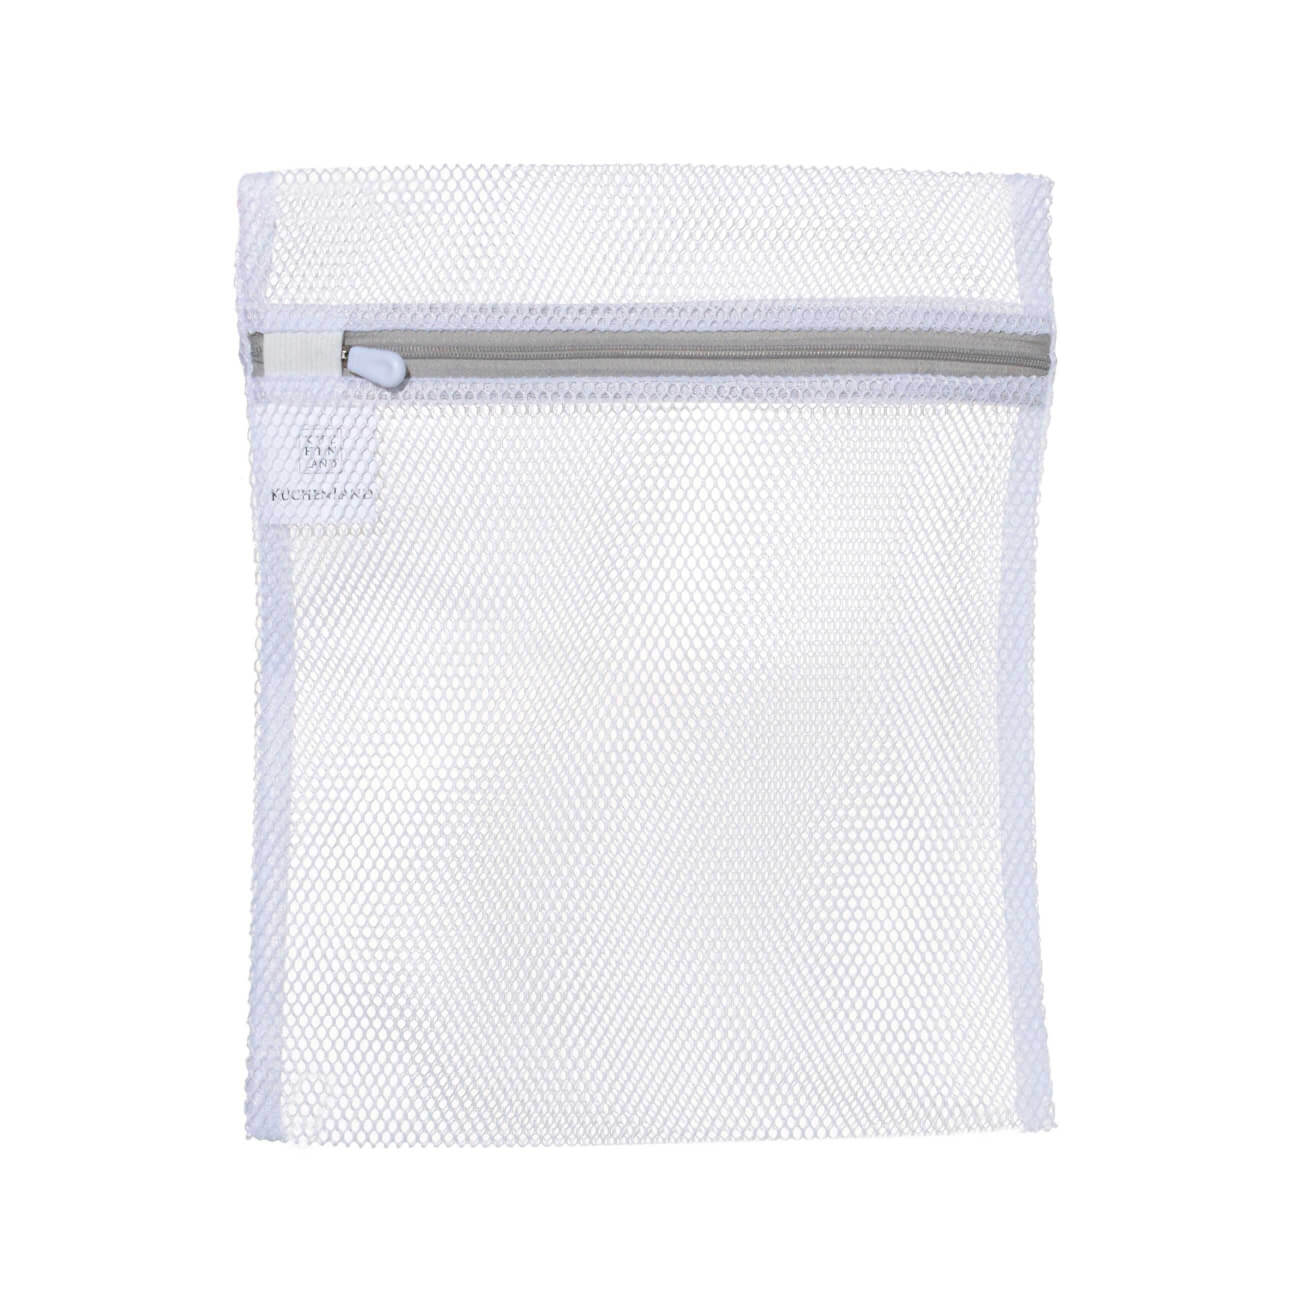 Мешок для стирки нижнего белья, 25х30 см, полиэстер, бело-серый, Safety мешок для стирки носков brabantia